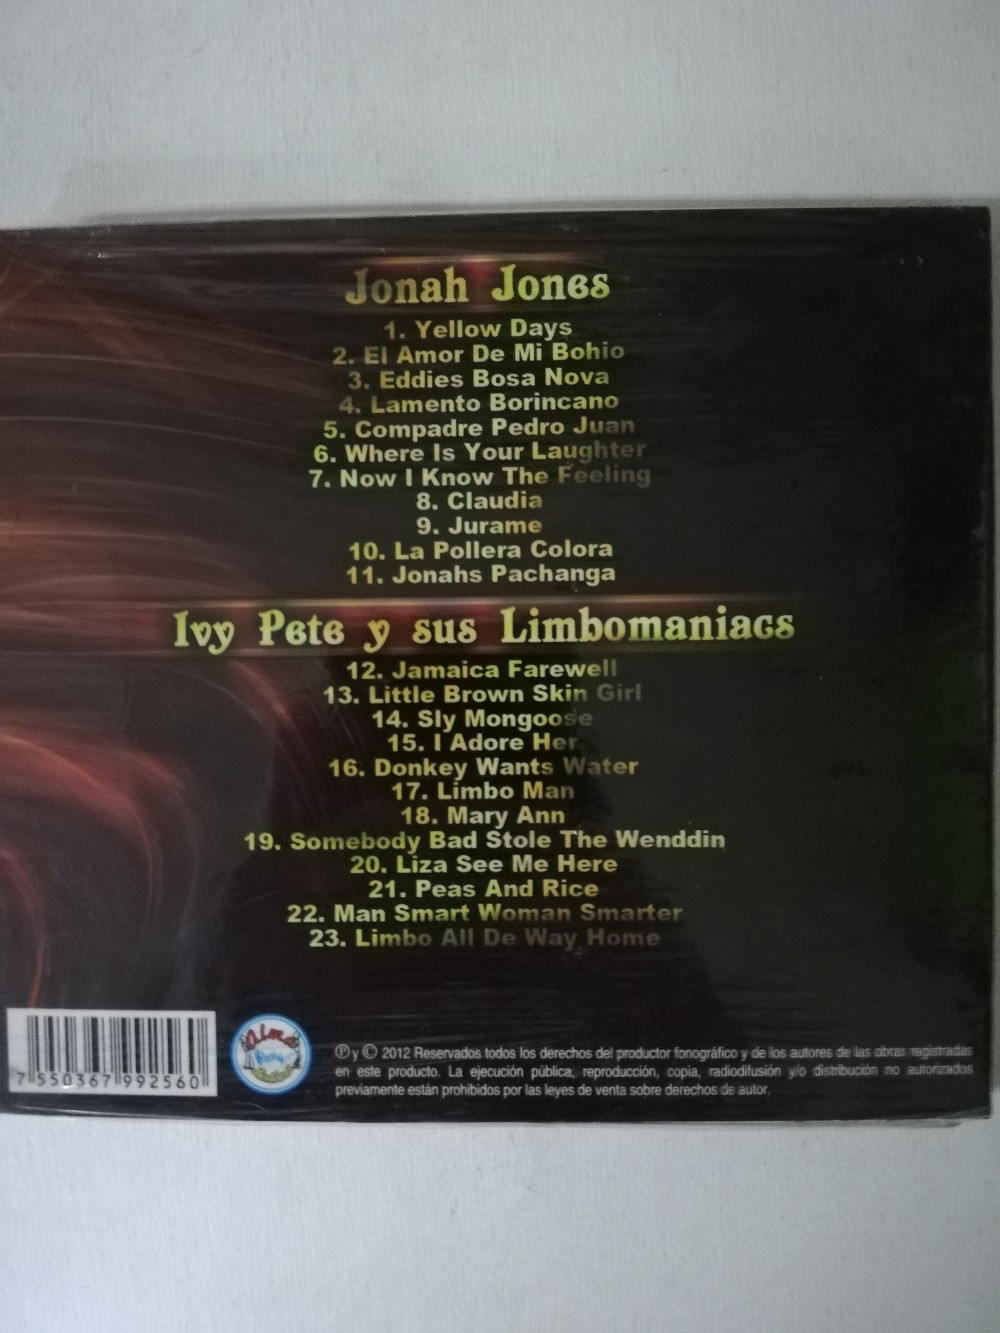 Imagen CD JONAH JONES/IVY PETE Y SUS LIMBOMANIACS 2